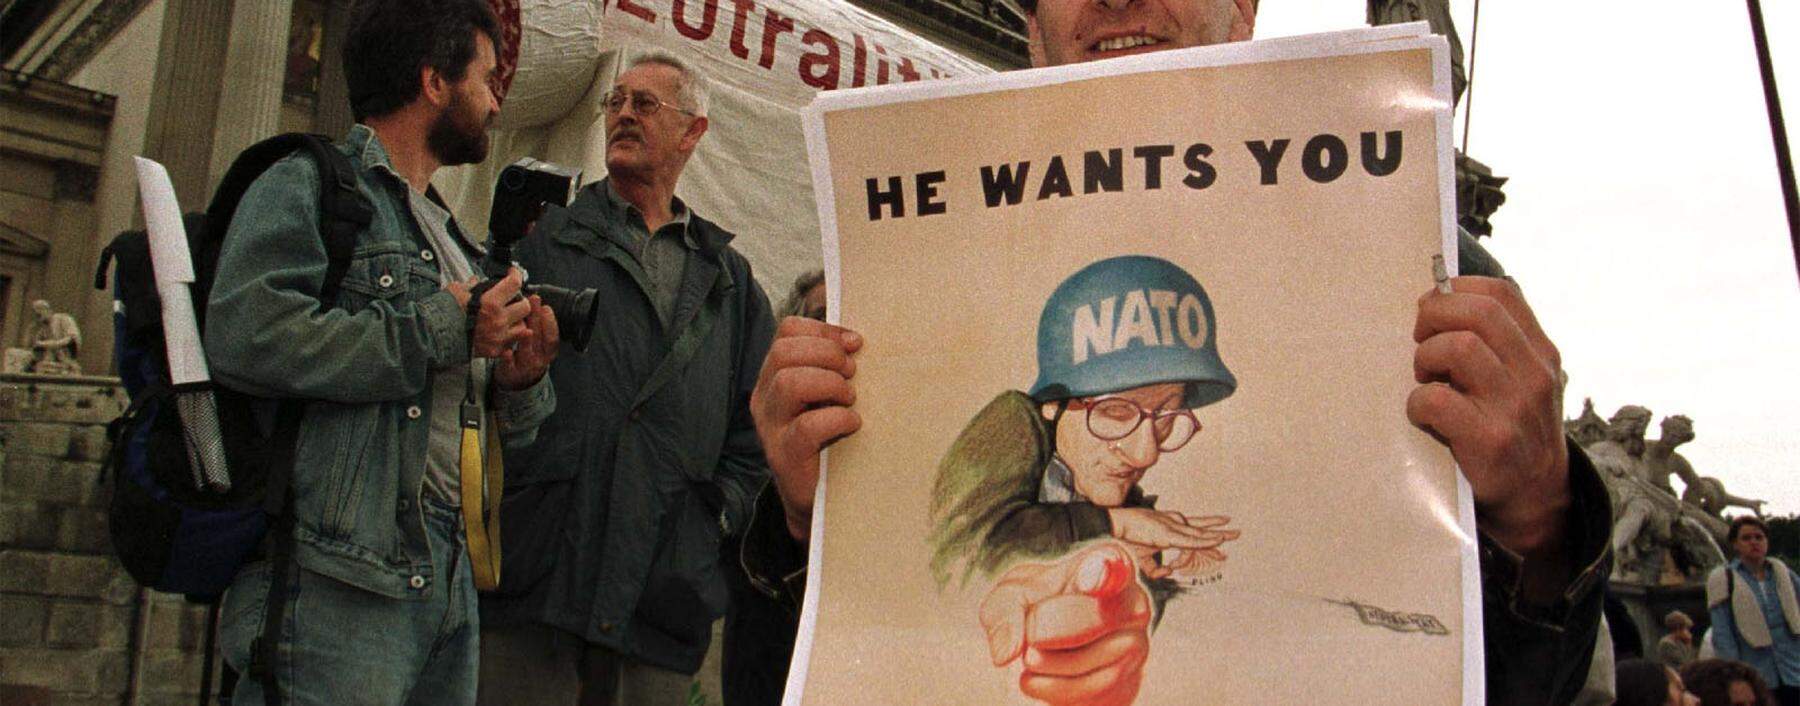 Archivbild: 1997 war die Lage noch ganz klar, damals wurde gegen einen Nato-Beitritt Österreichs demonstriert.